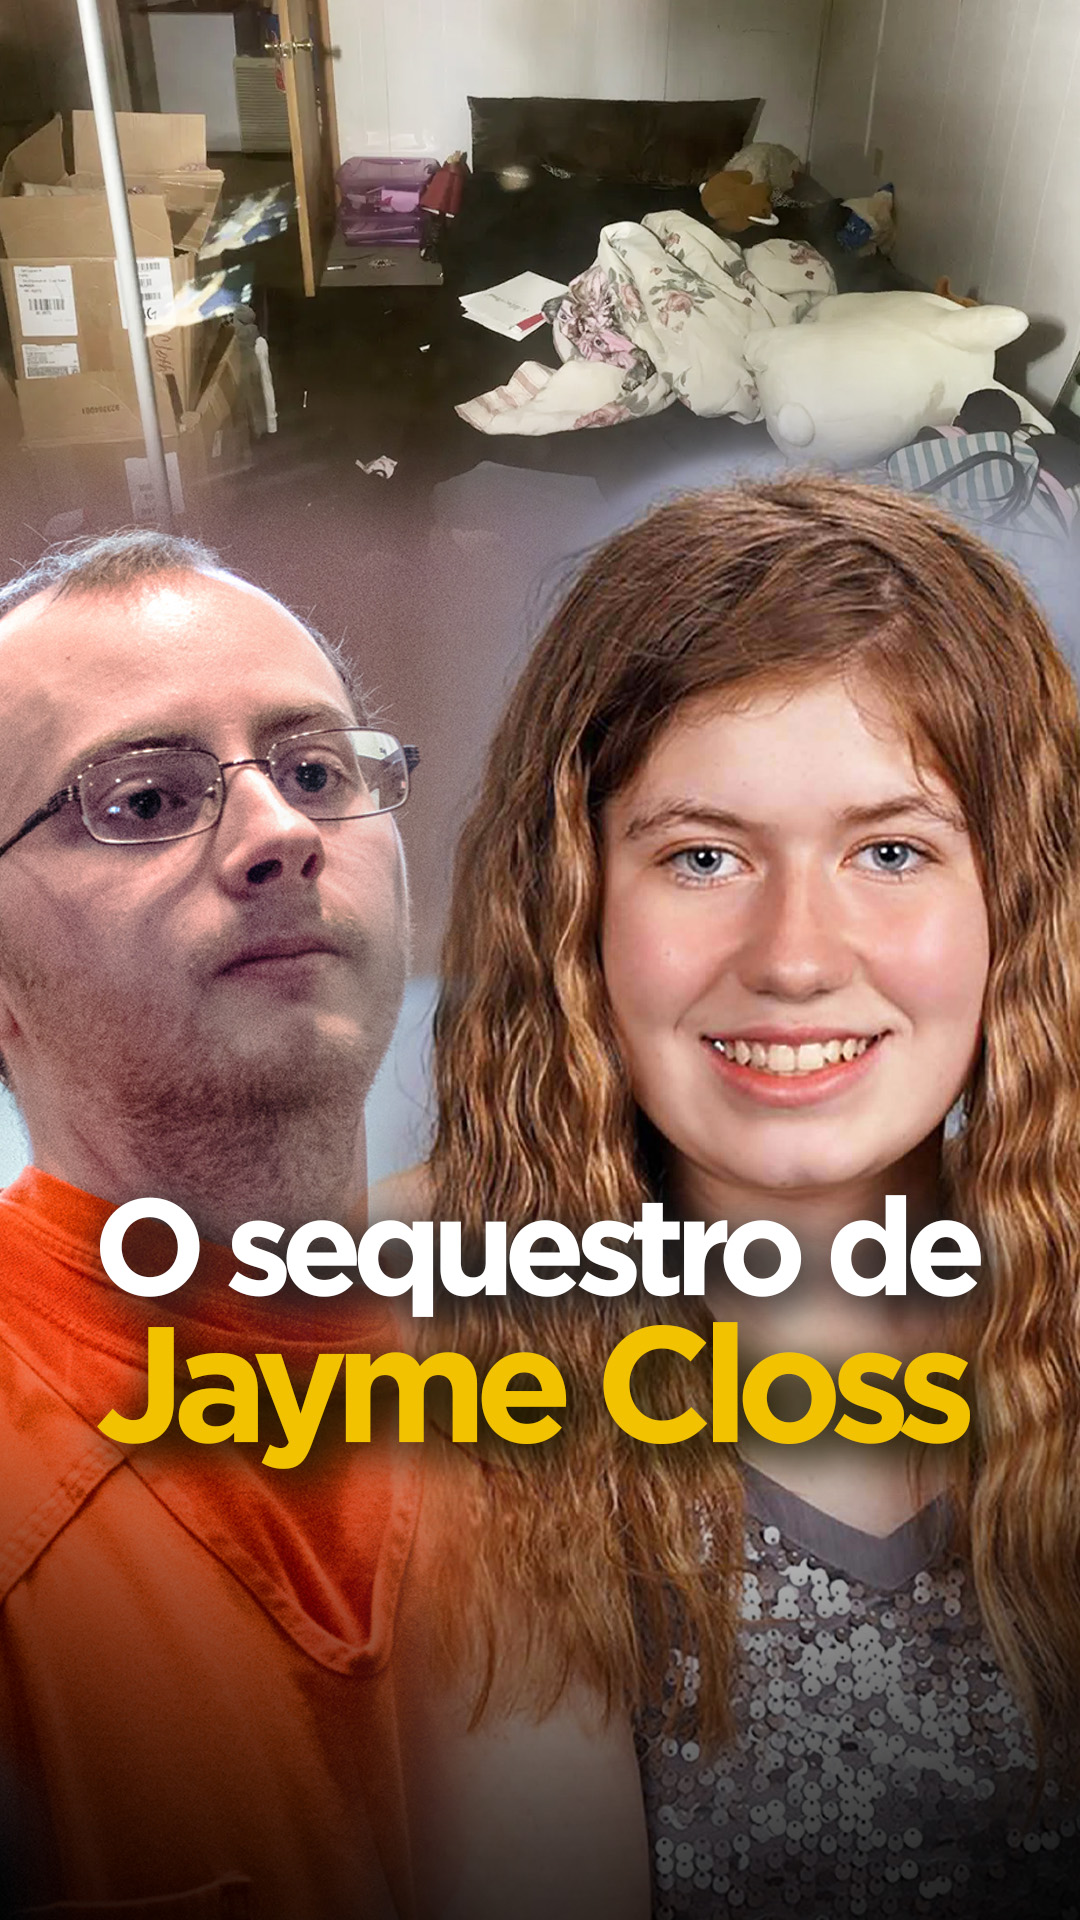 88 dias Sequestrada: JAYME CLOSS | Vítima e Heroína!